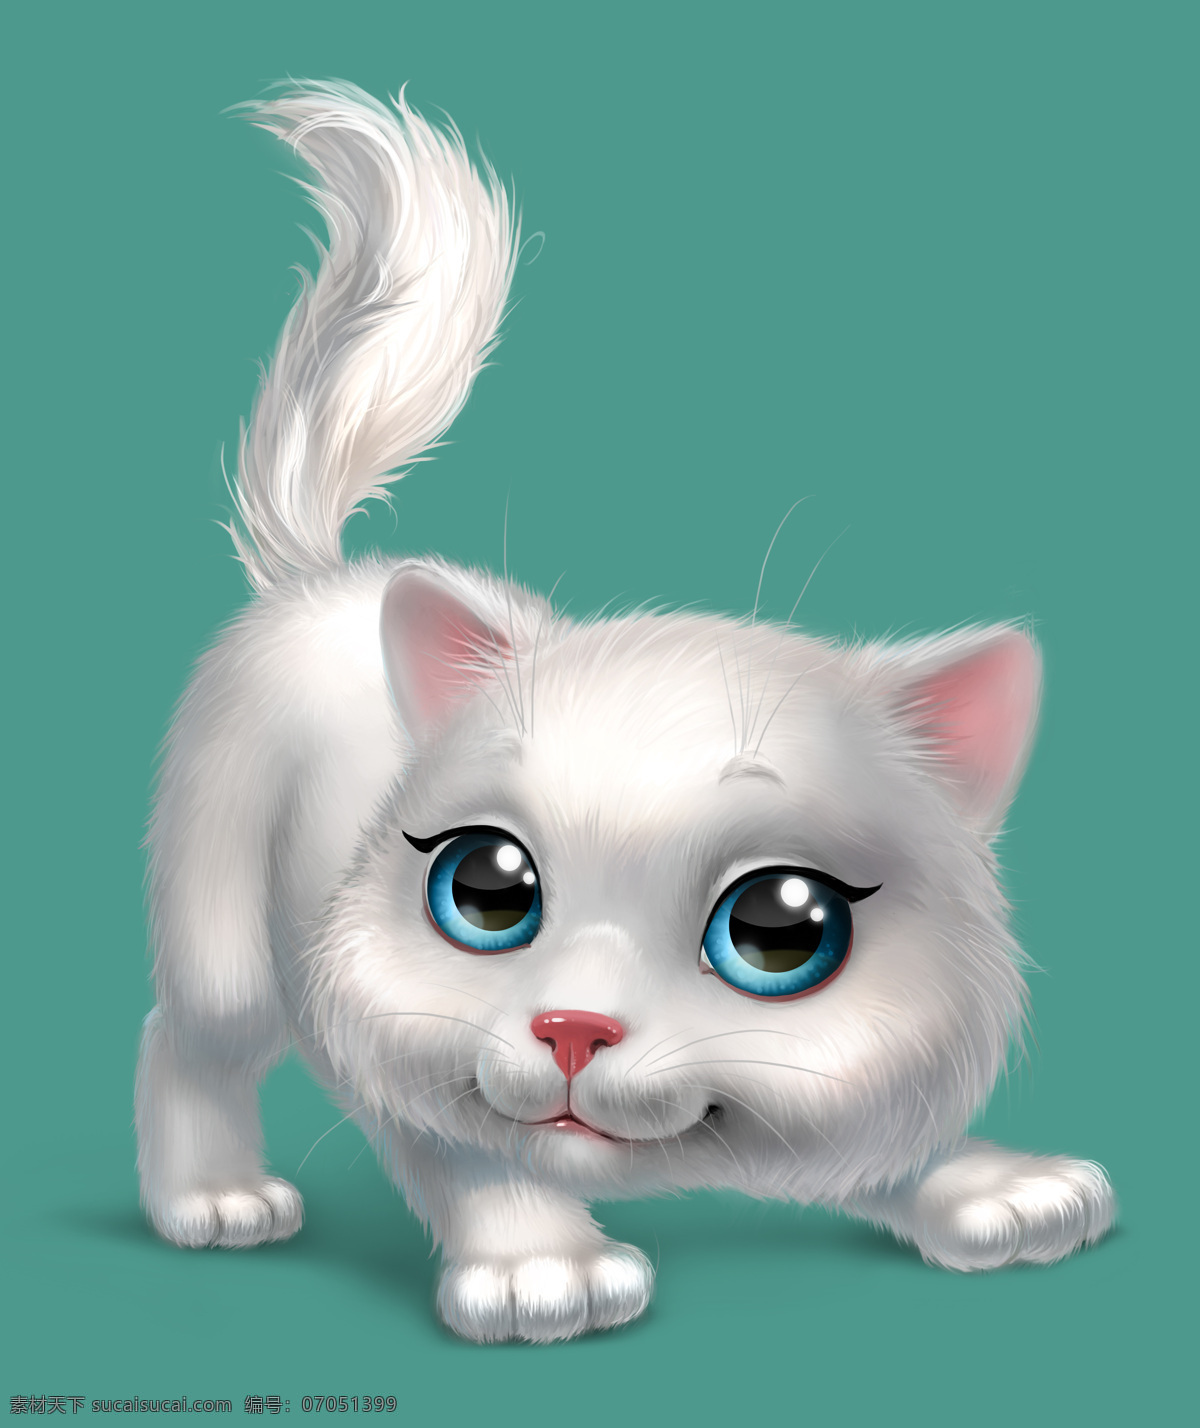 白色 可爱 小猫 卡通猫 猫咪 3d动物 立体动物 陆地动物 动物世界 卡通动物 漫画动物 其他类别 生活百科